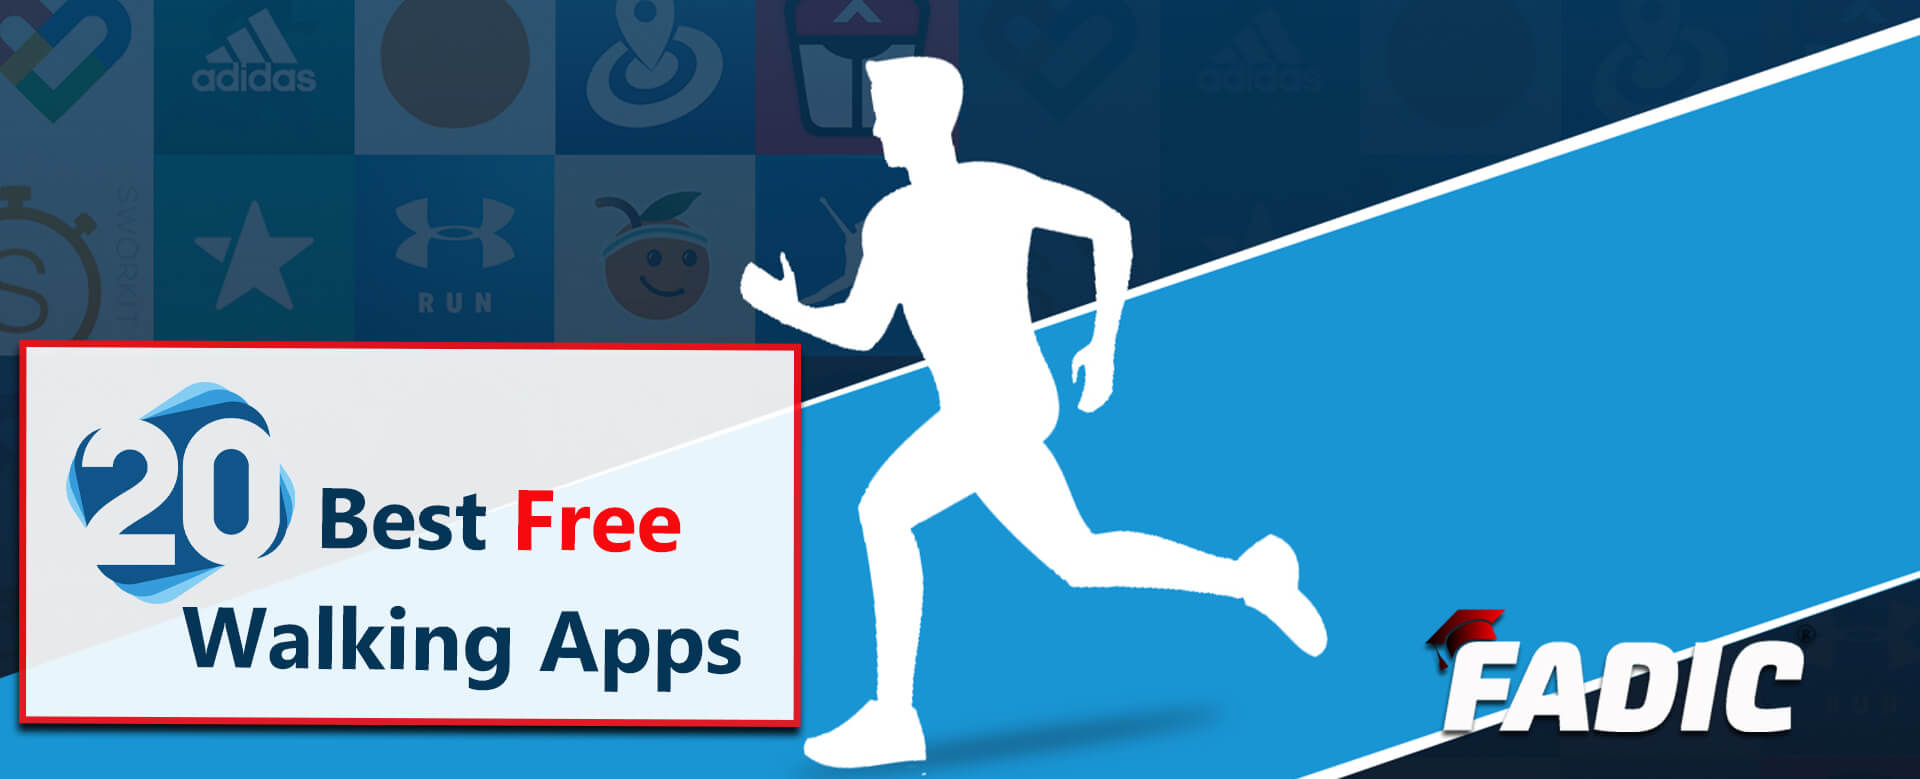 20 Best Free Walking Apps Walkers | Download from FADIC